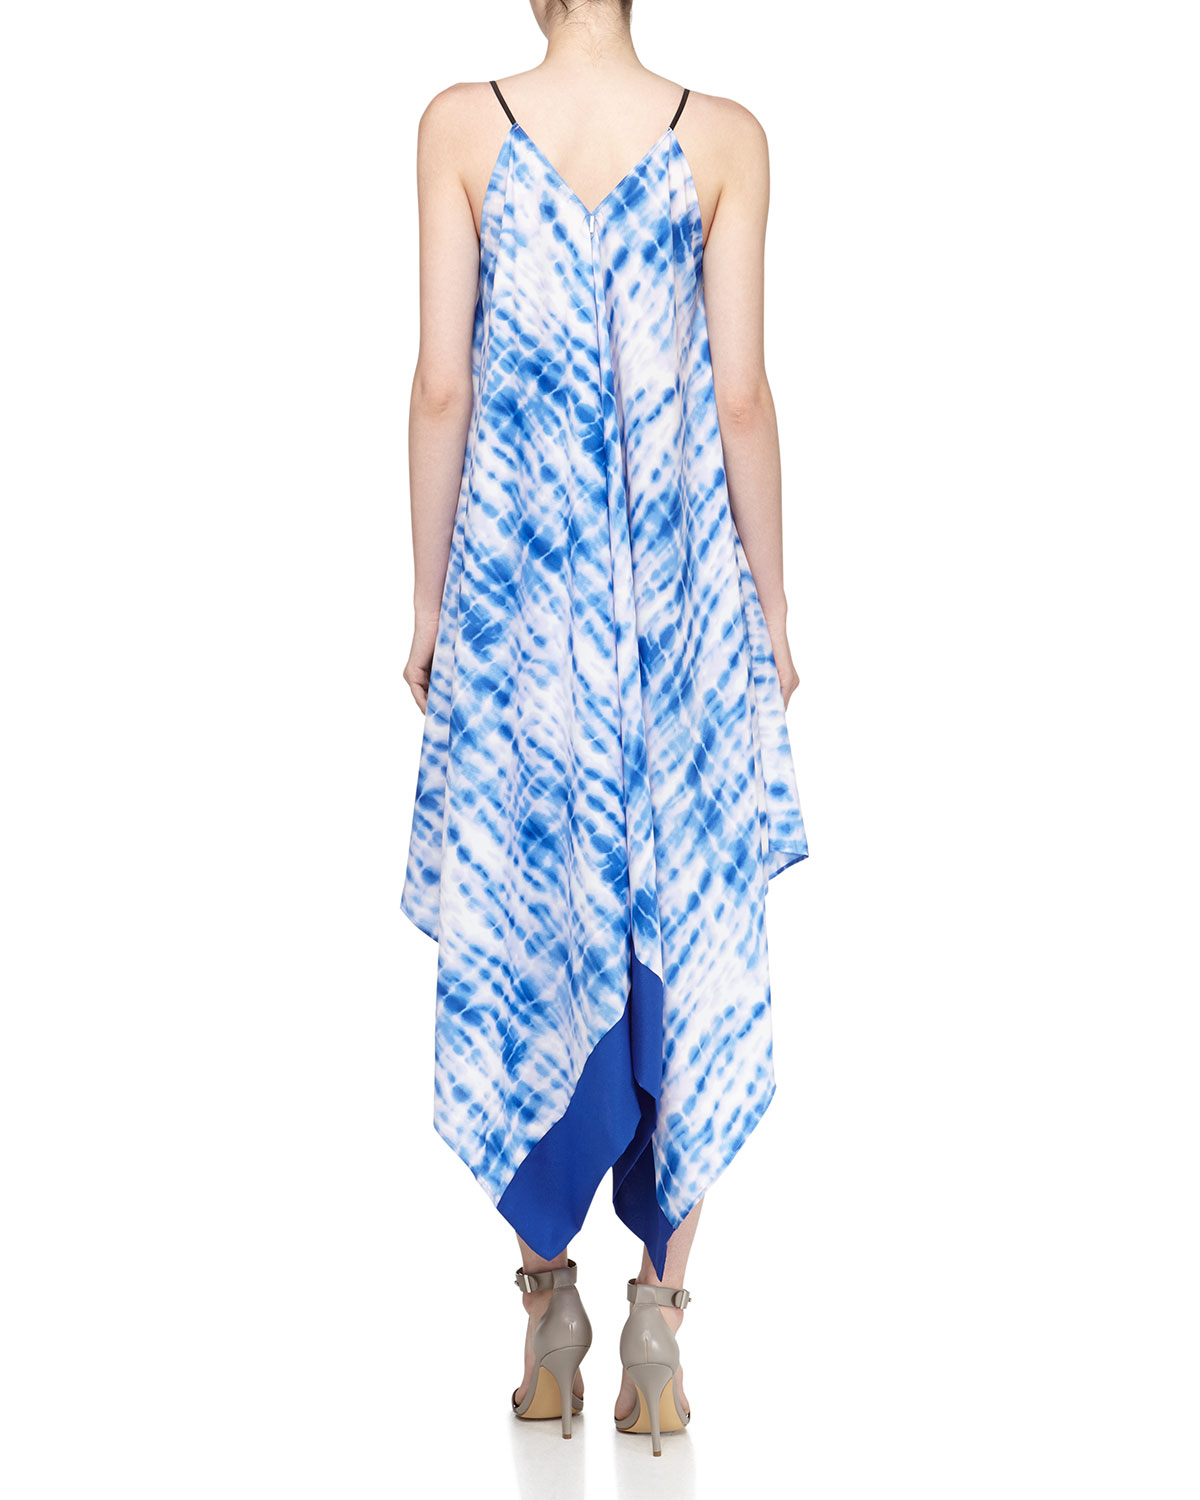 T-bags Tie Dye Handkerchief Maxi Dress in Blue (BLUE PATRN) | Lyst